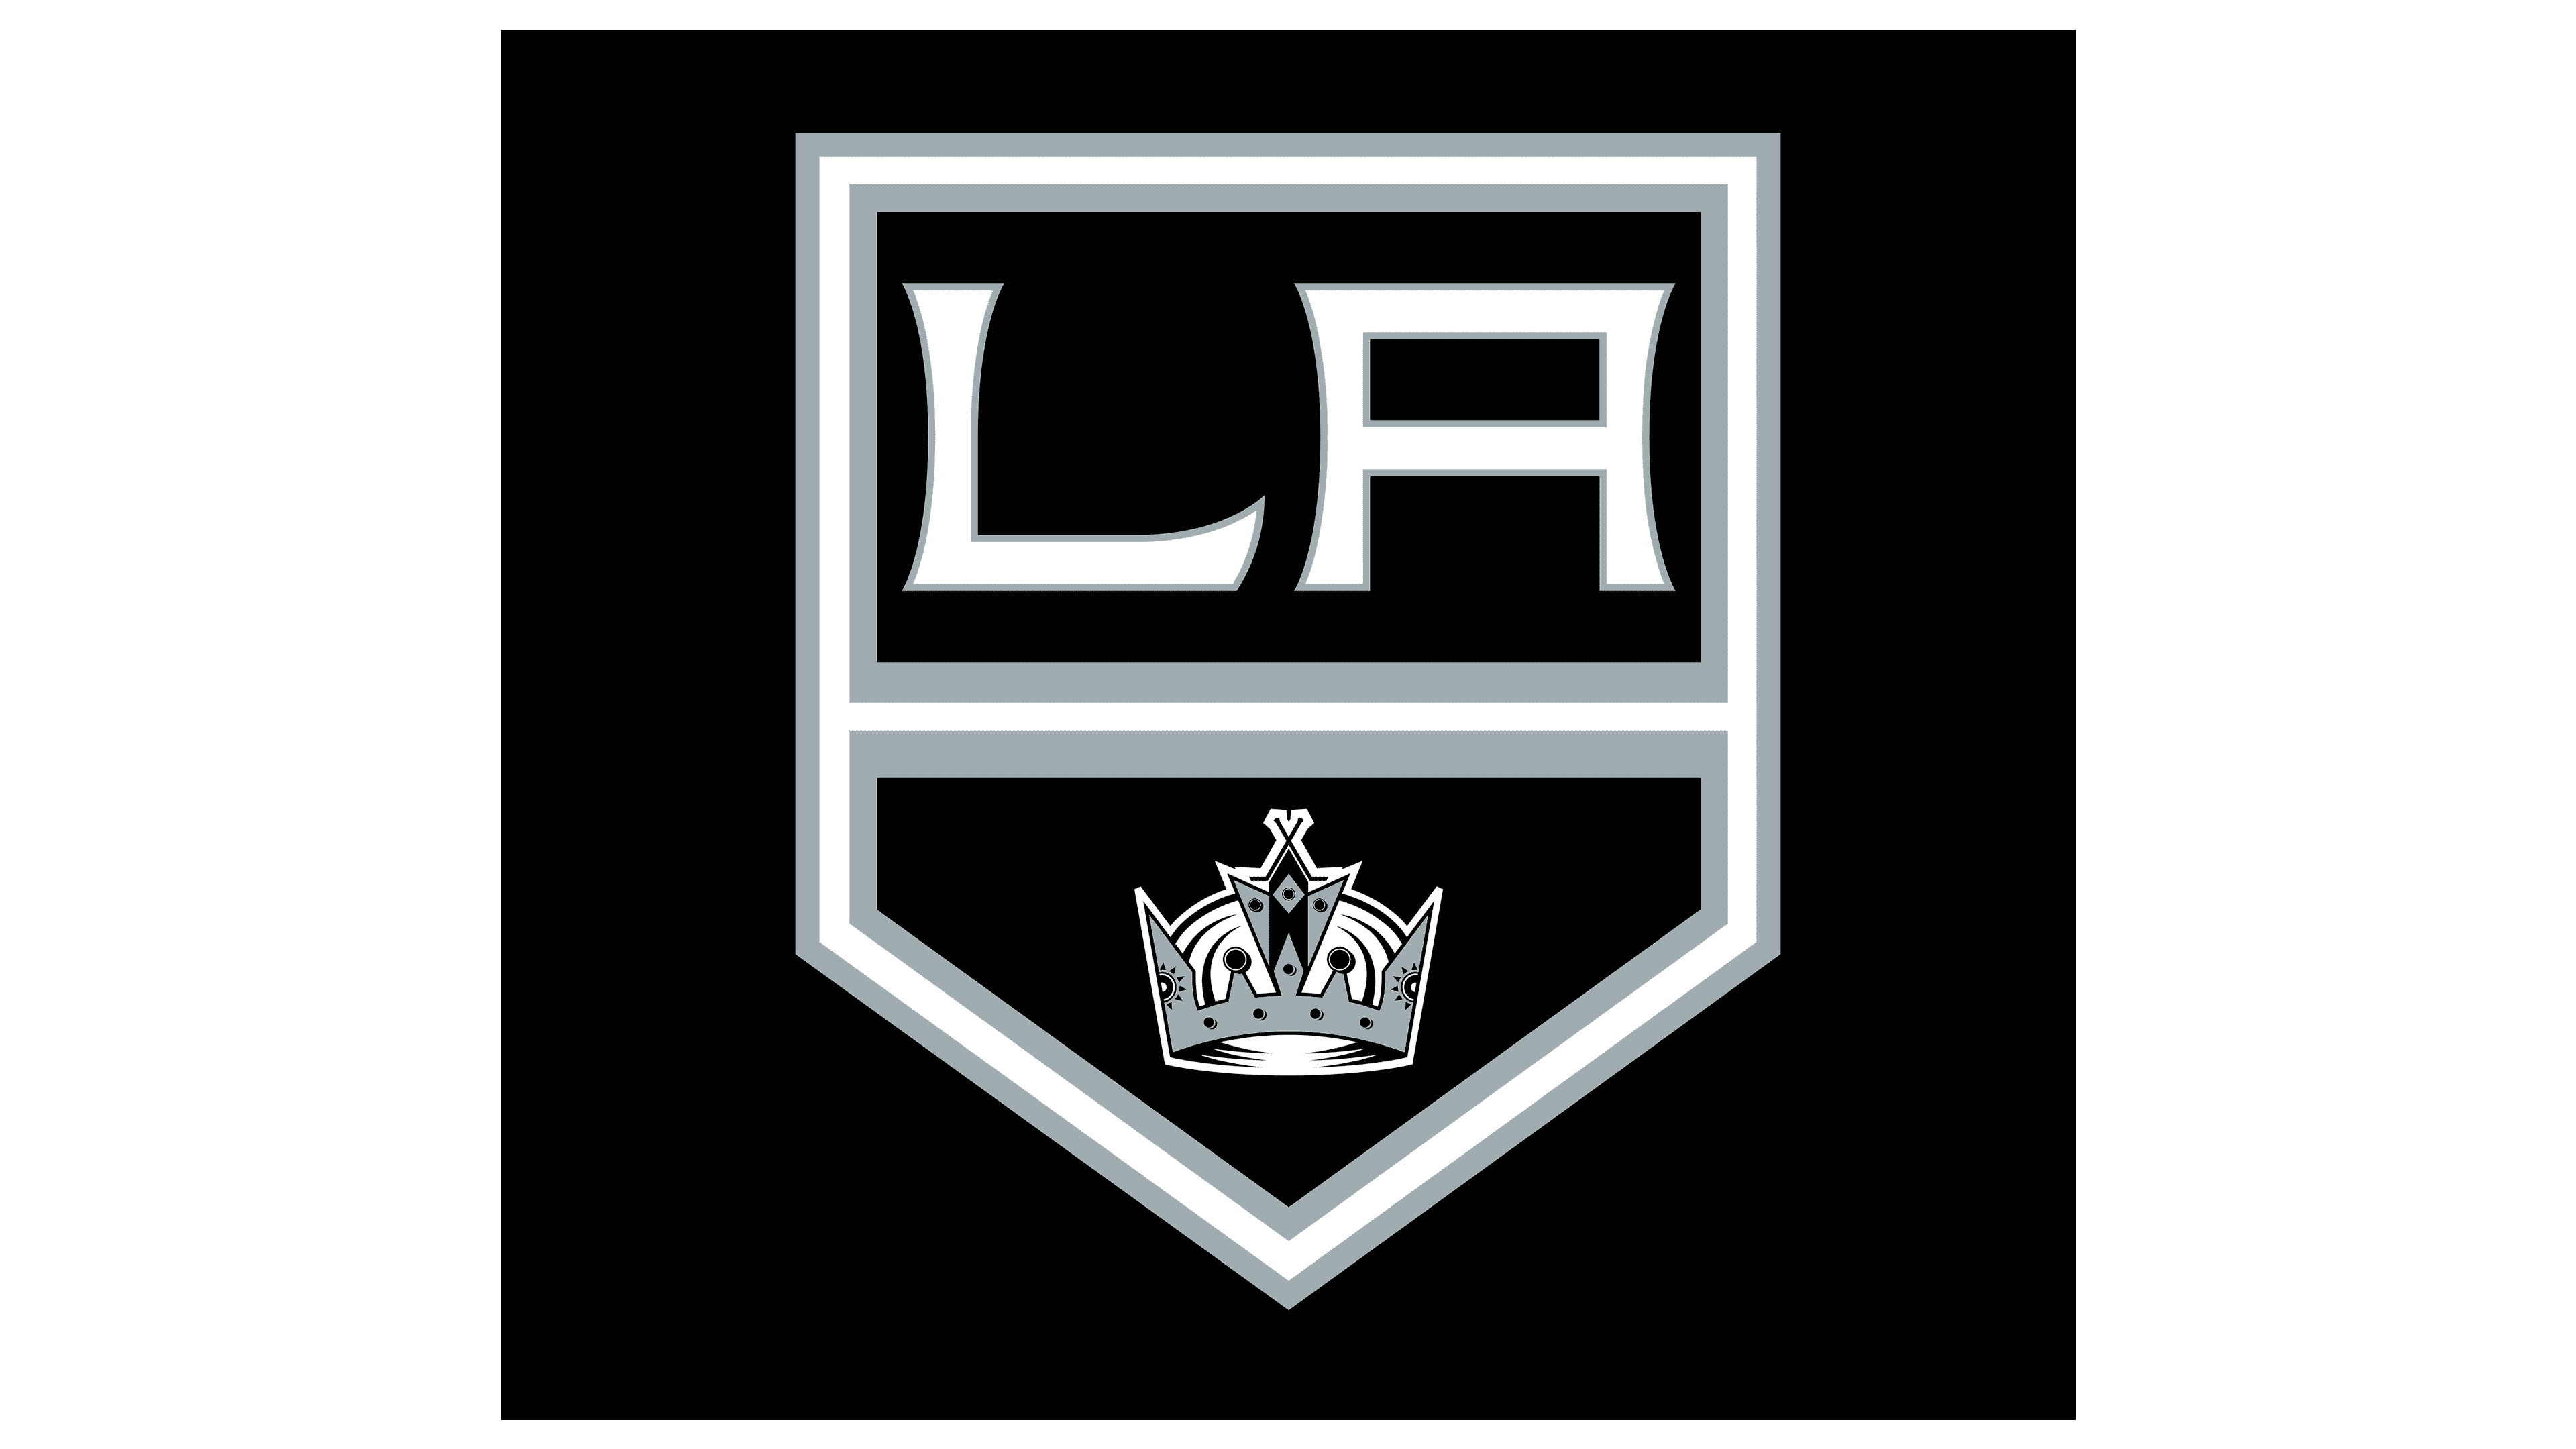 Los Angeles Kings Logo | Symbol, History, PNG (3840*2160)